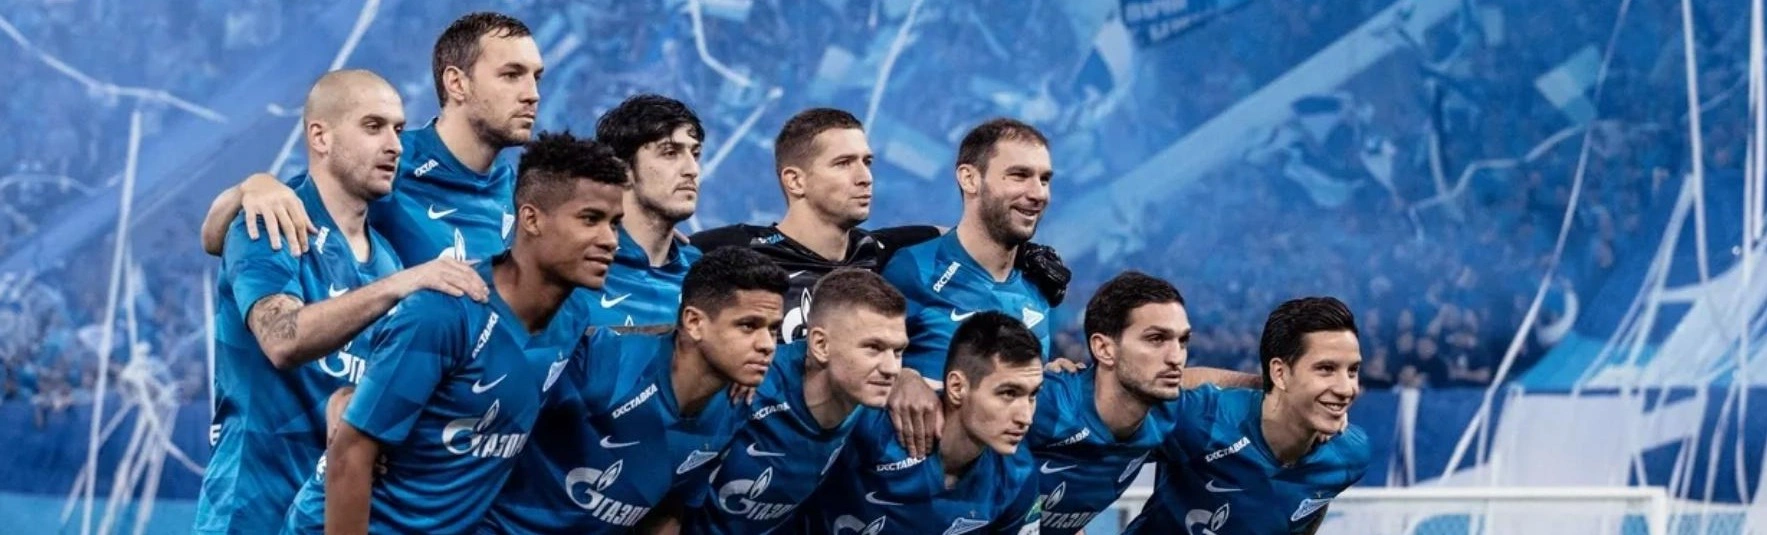 Питерский «Зенит» одержал волевую победу над датским клубом «Брондбю»